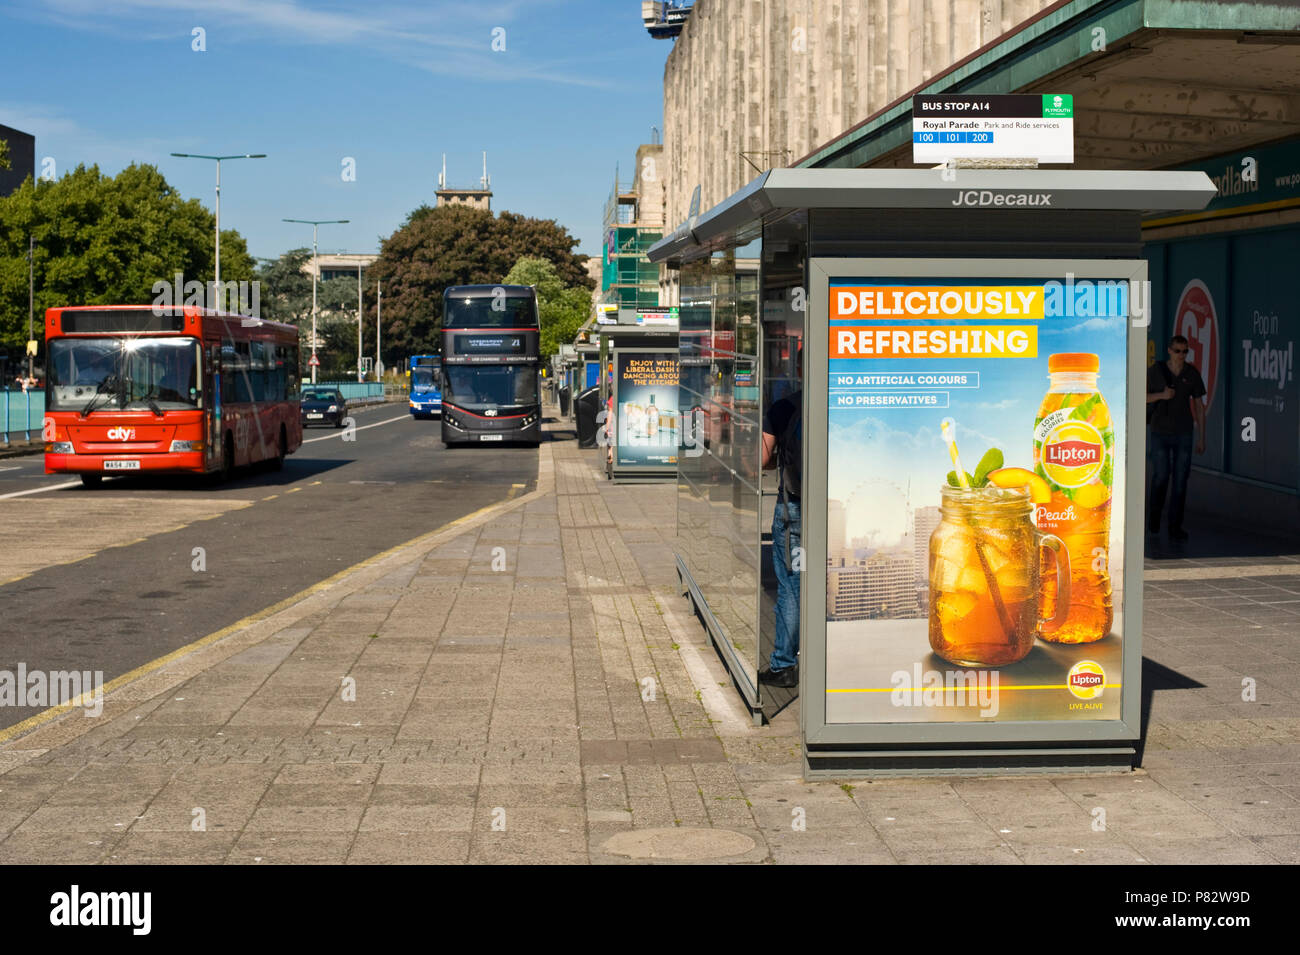 JCDecaux strada fermata bus billboard sito web pubblicità Lipton tè freddo in Plymouth Devon England Regno Unito Foto Stock